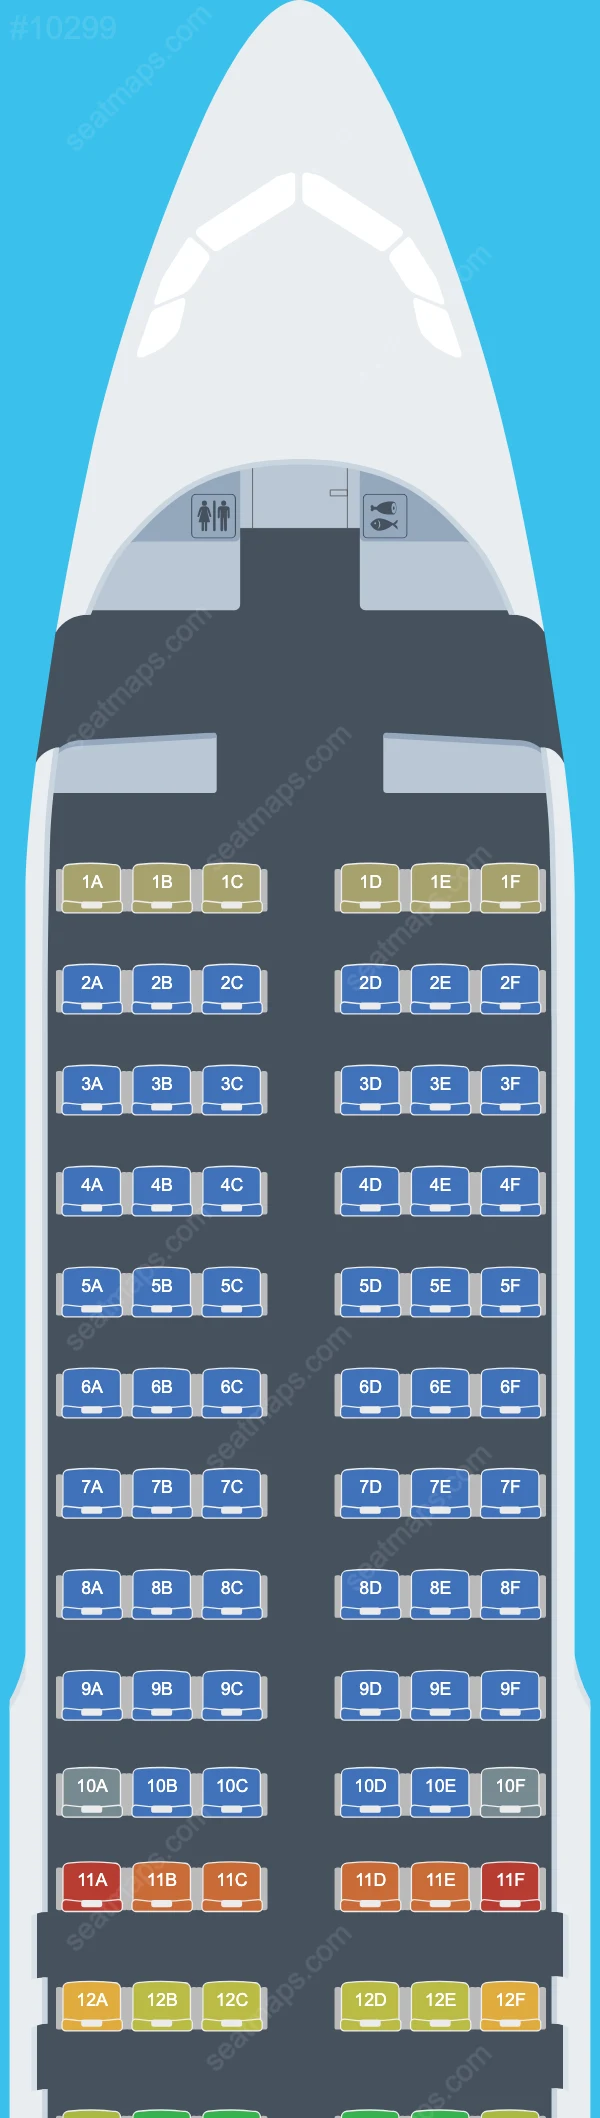 LATAM Airlines Peru Airbus A320 Seat Maps A320-200 V.1